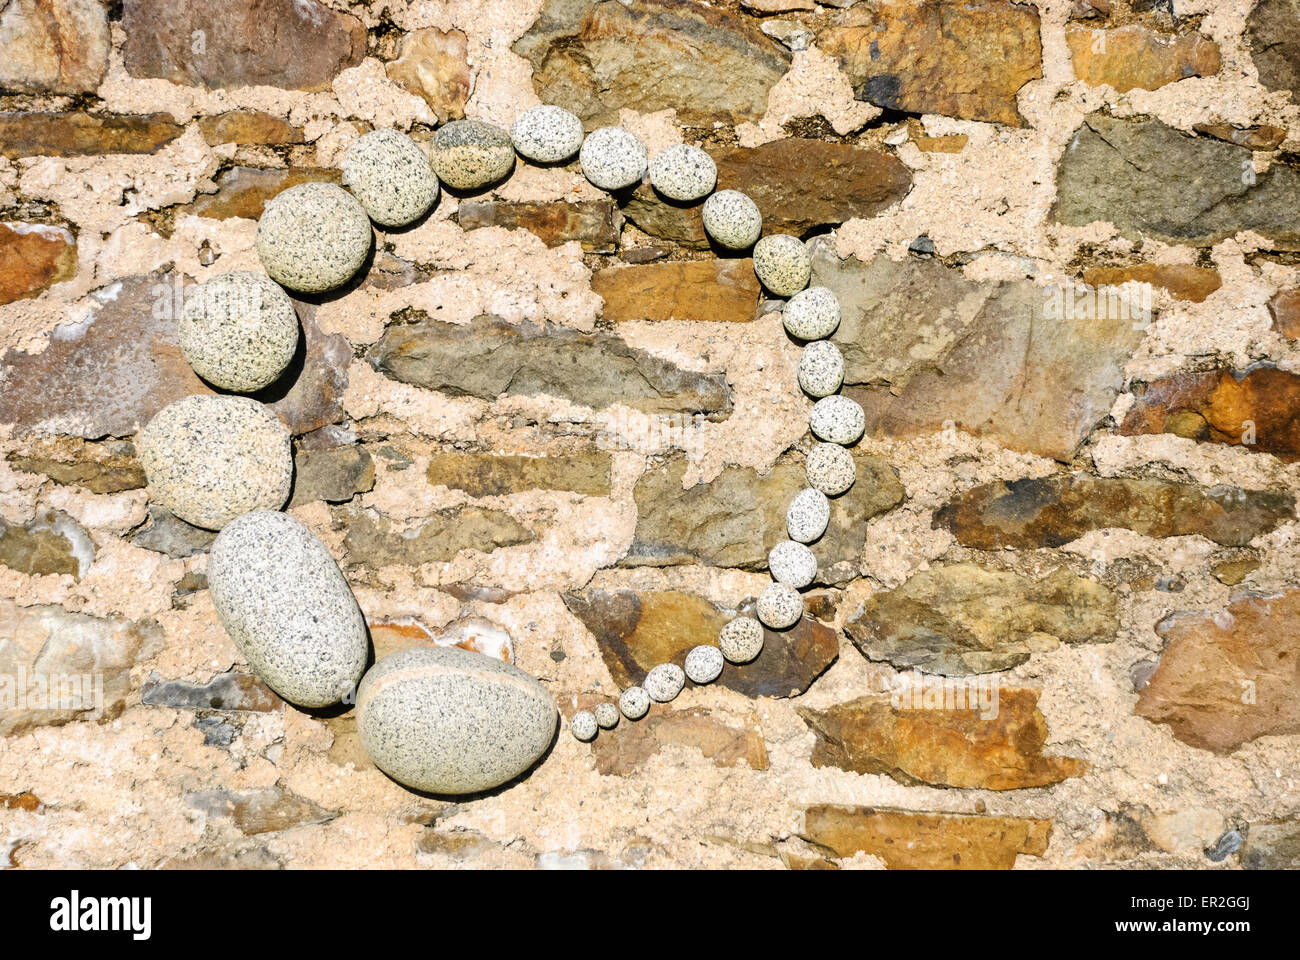 Steinen auf einer Wand in einem künstlerischen Kreis angeordnet Stockfoto